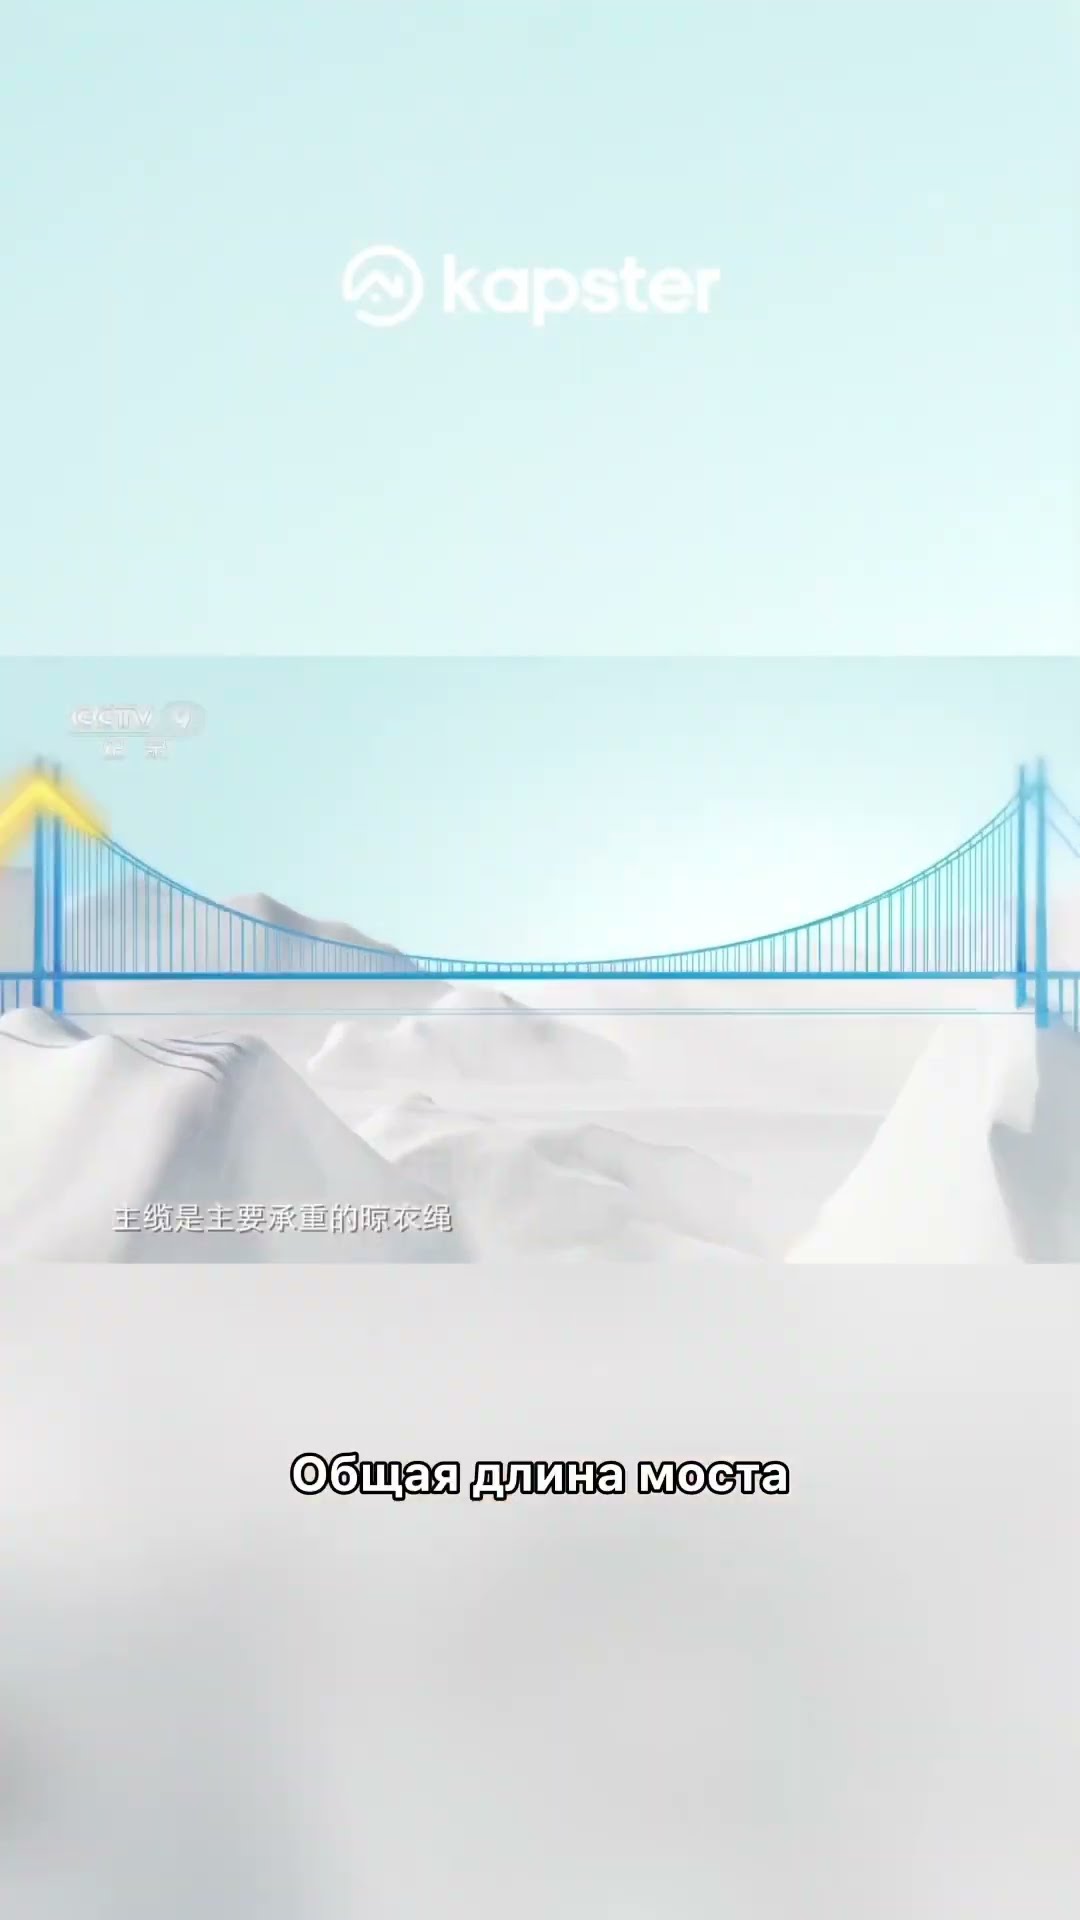 Мост ★ Потрясающий мультик со смыслом